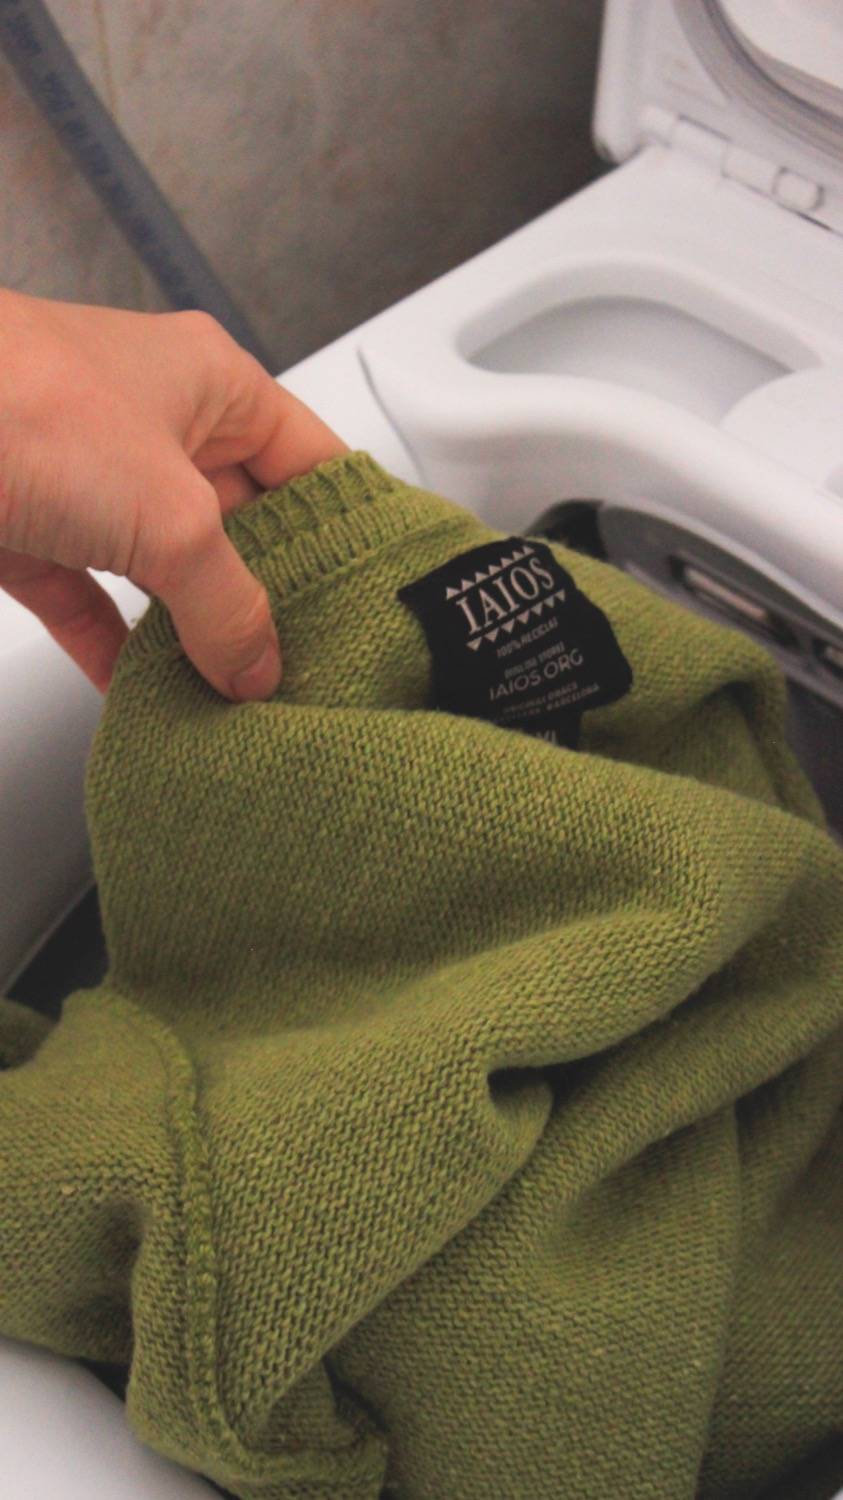 Un jersey vuelto del revés saliendo de una lavadora